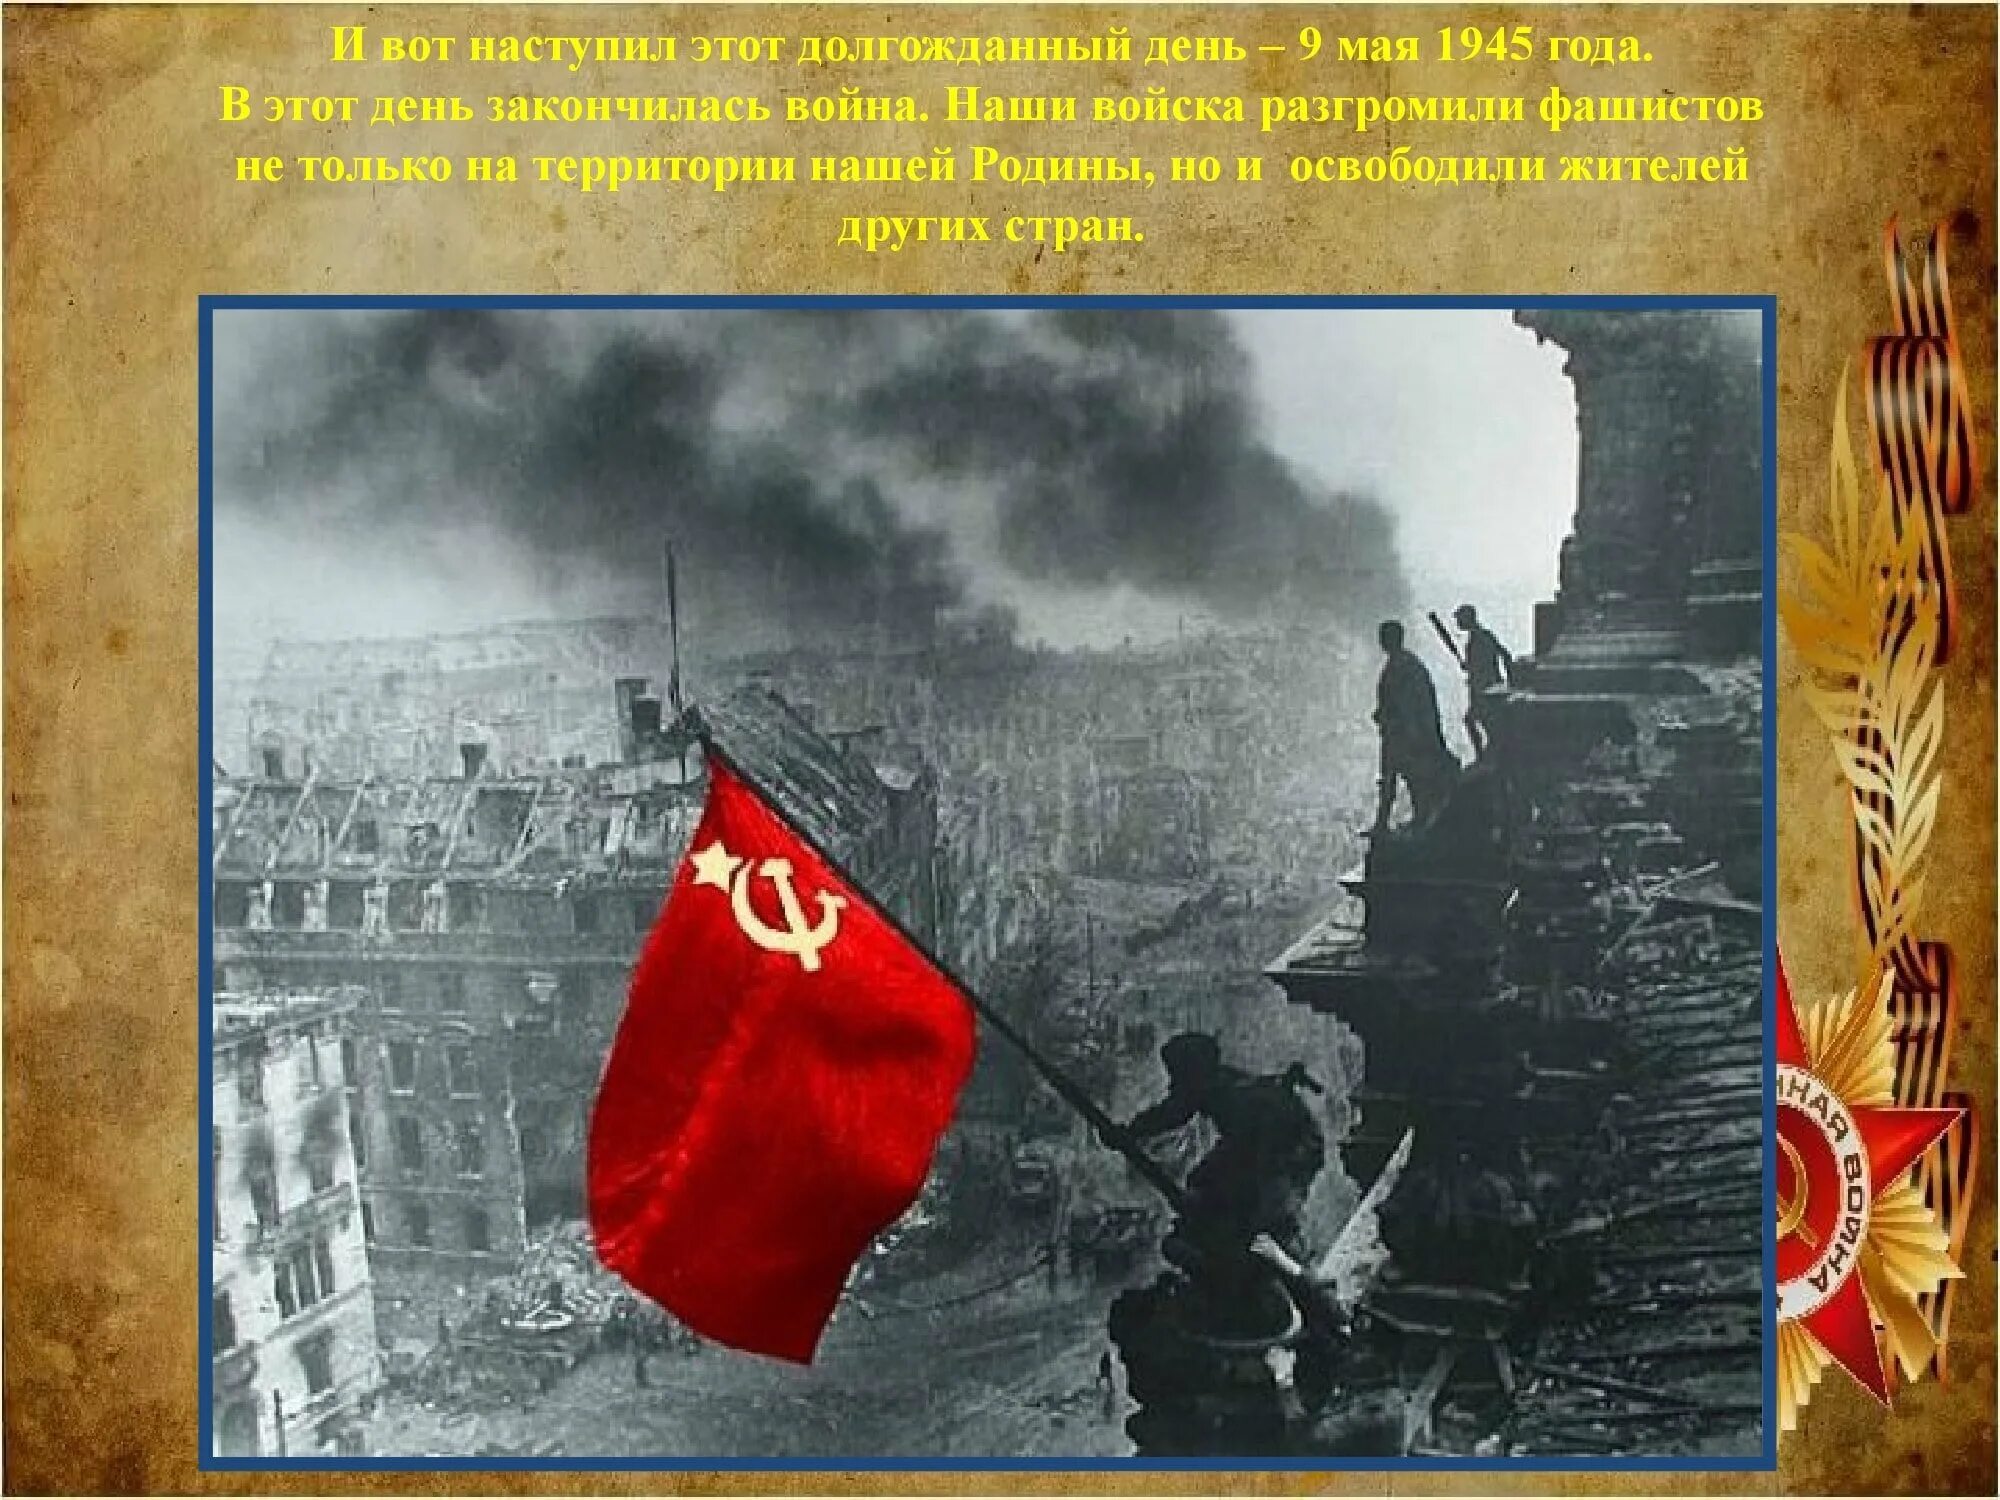 Флаг победы в великой отечественной войне